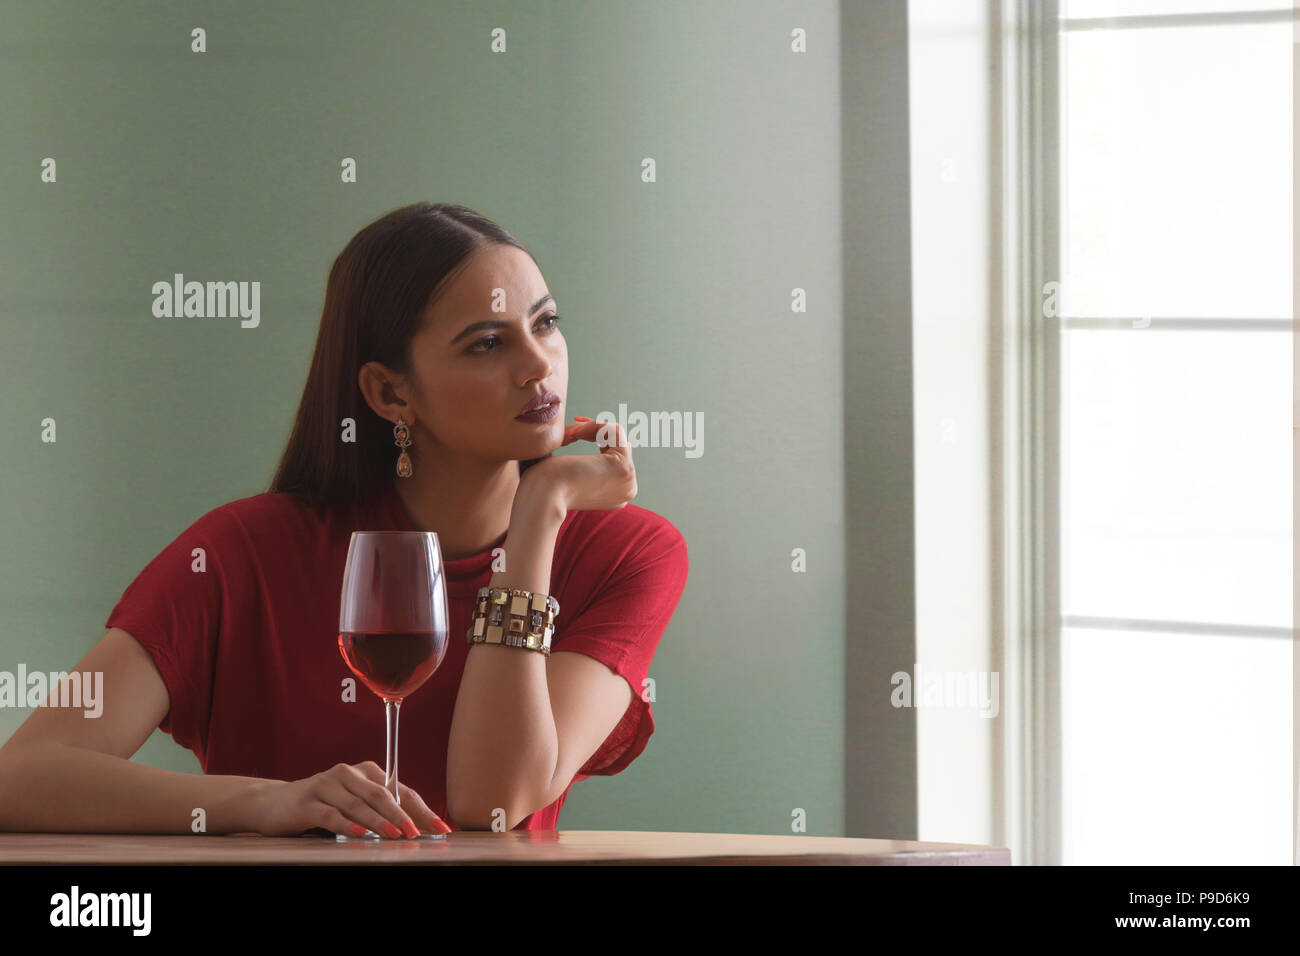 Jeune femme tenant un verre de vin sitting at table Banque D'Images